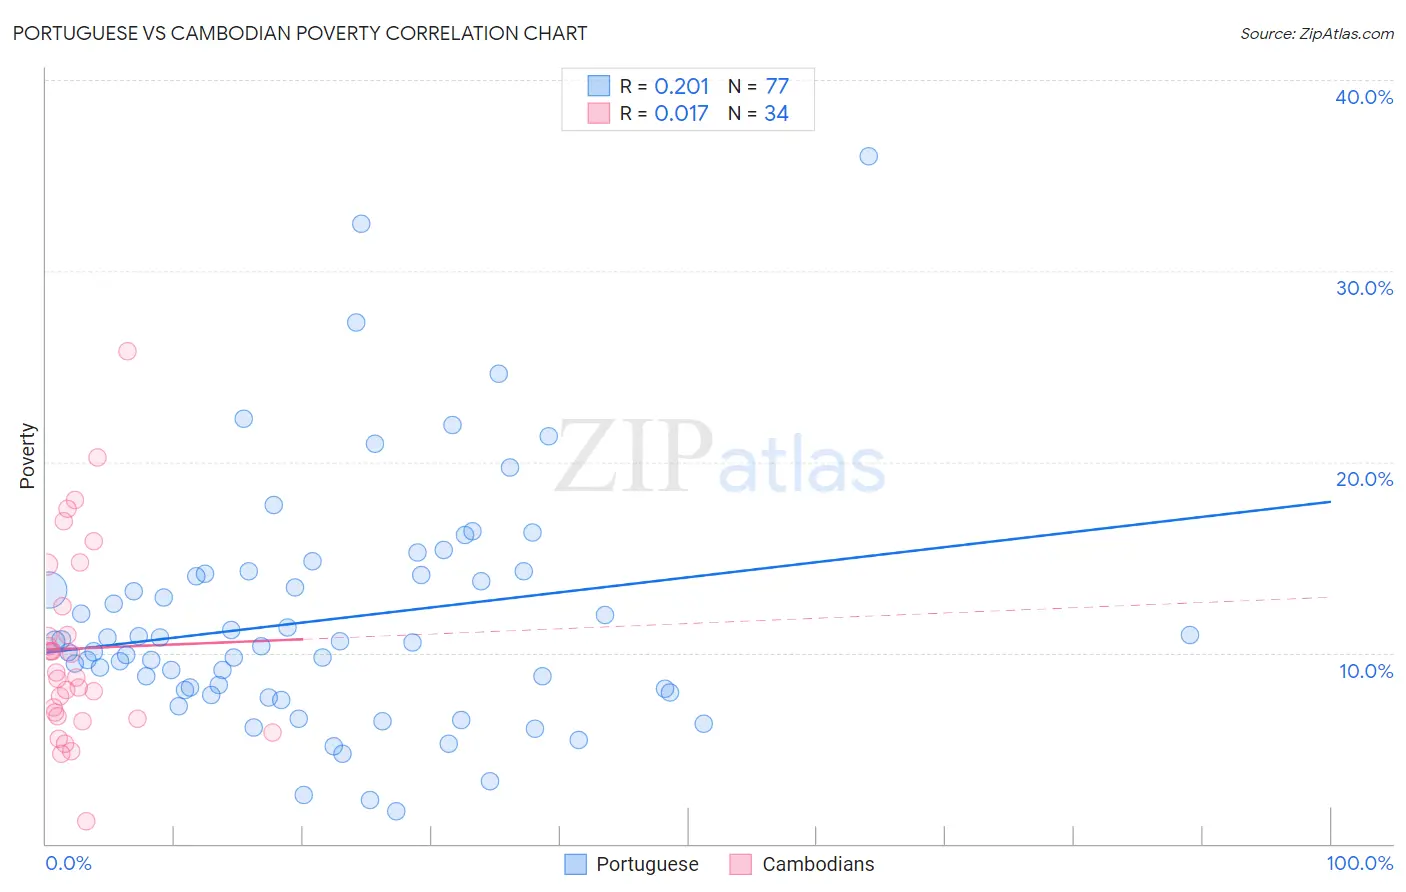 Portuguese vs Cambodian Poverty